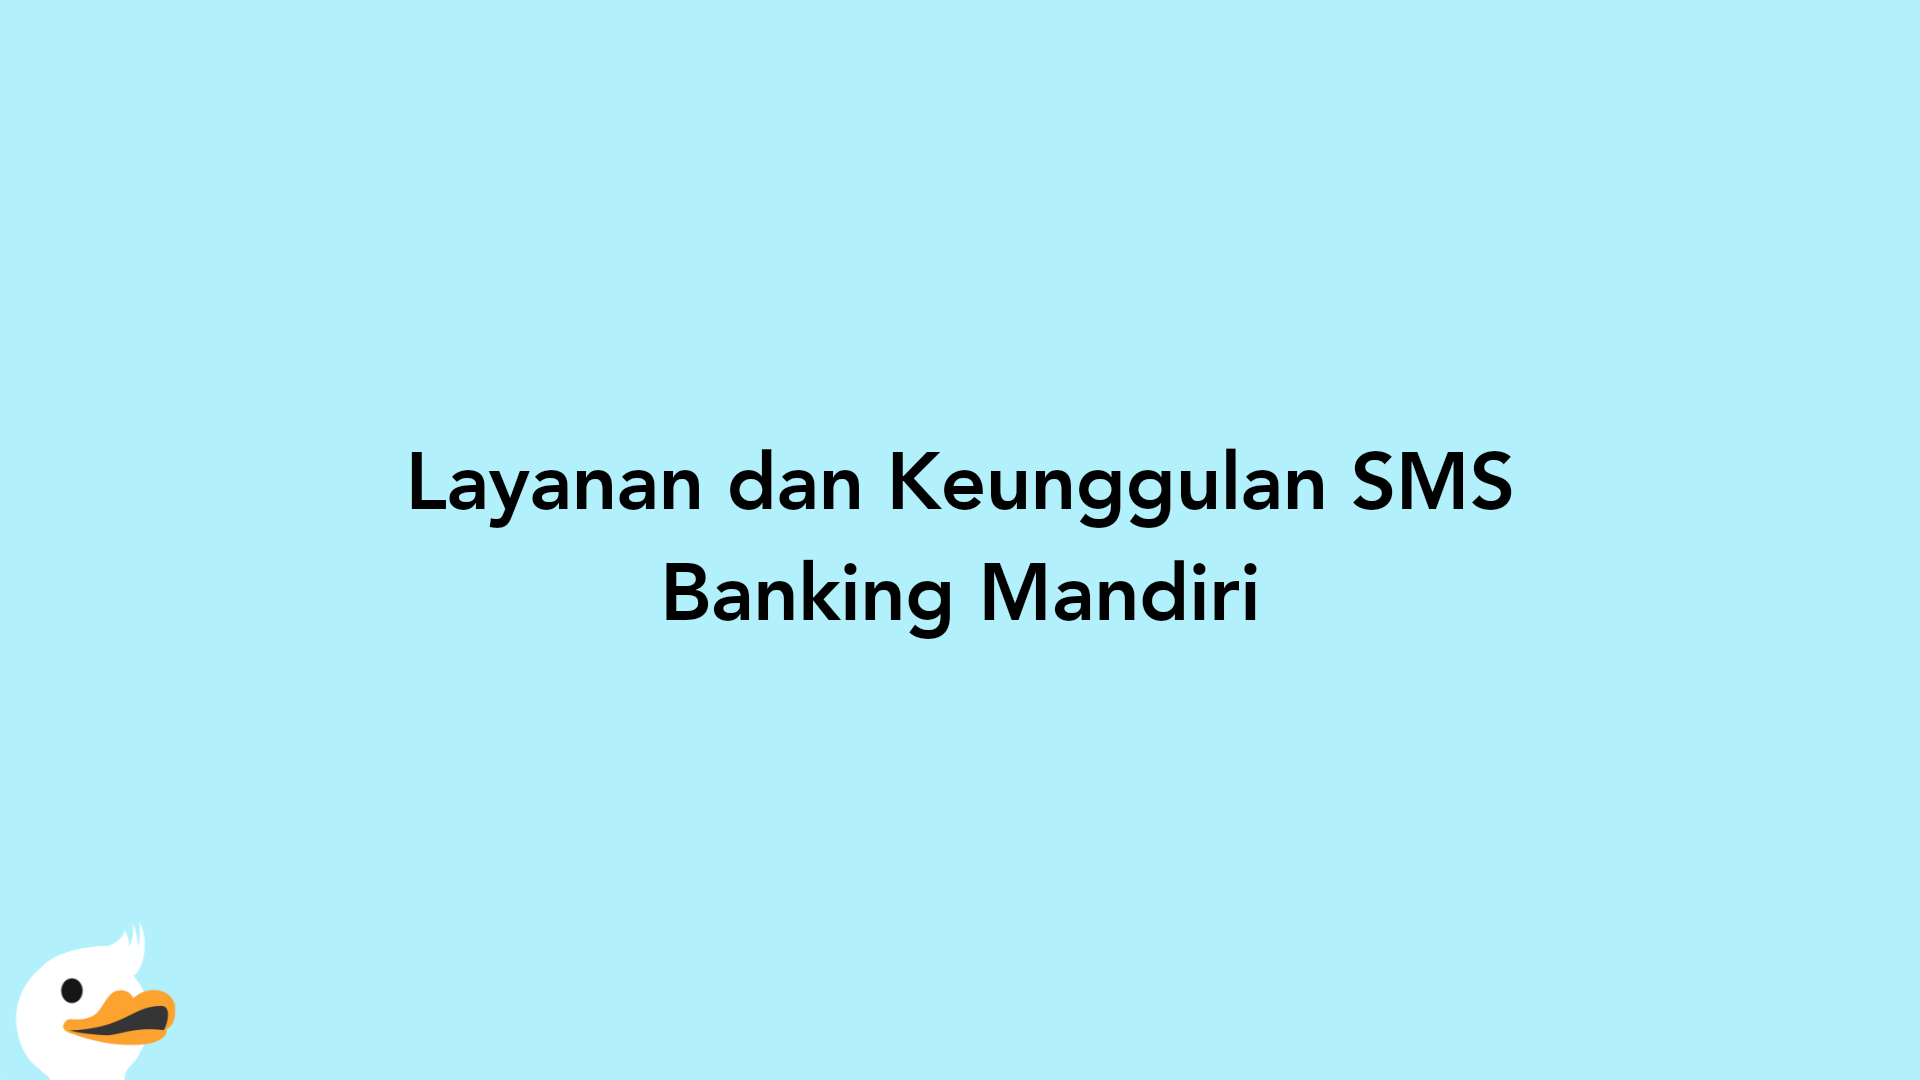 Layanan dan Keunggulan SMS Banking Mandiri